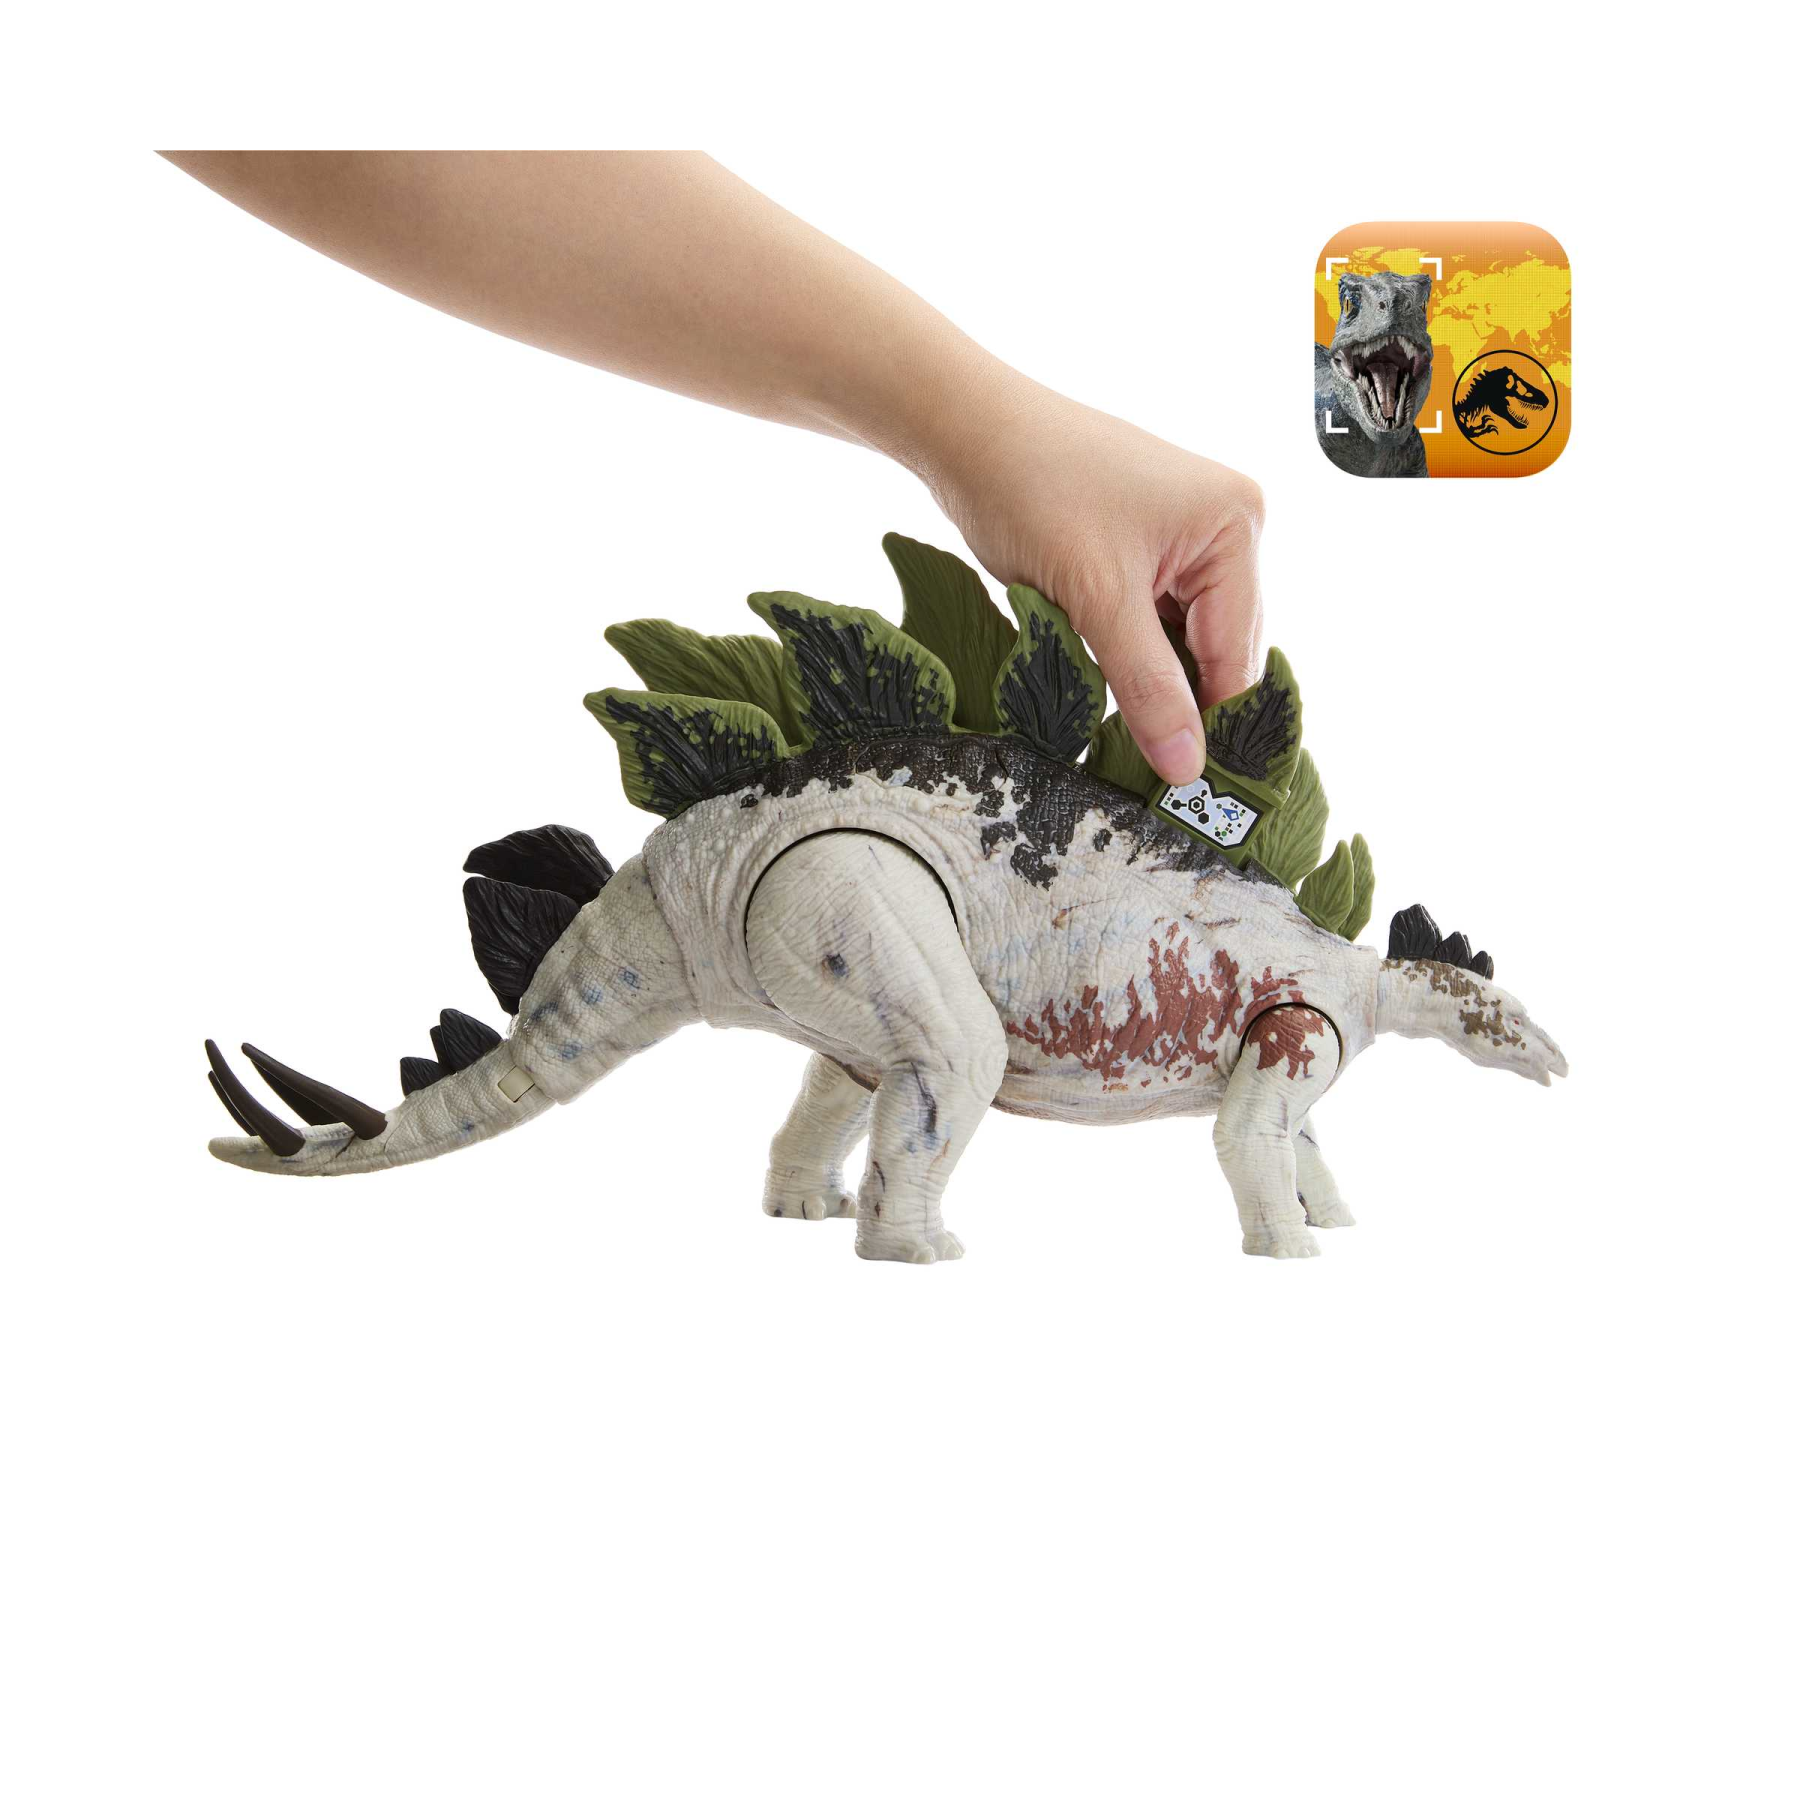 Jurassic world - predatori giganti stegosauro, dinosauro di grandi dimensioni con mossa d'attacco e attrezzatura di tracciamento, per gioco classico e digitale, giocattolo, 4+ anni, hlp24 - Jurassic World